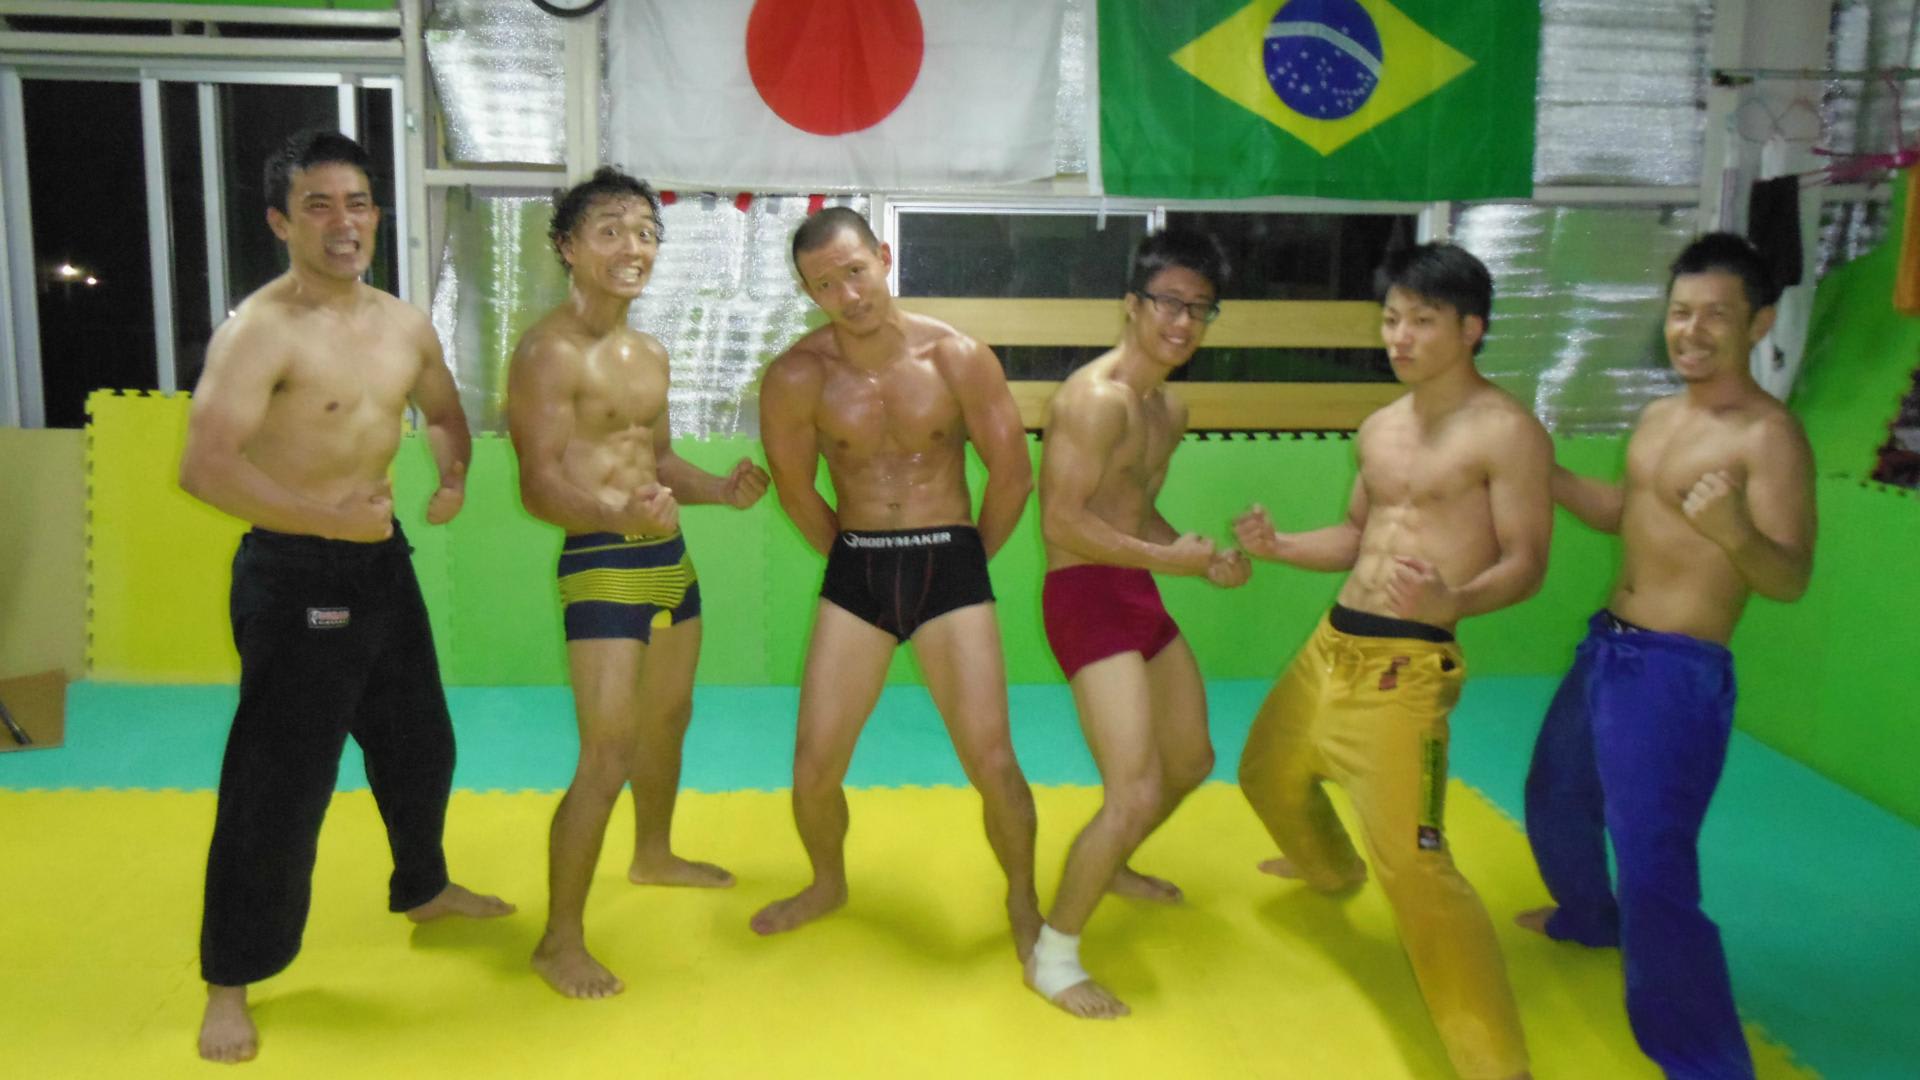 Nr柔術 筋トレ部続けてます 奈良でブラジリアン柔術 格闘技 ーnr柔術ー ブラジリアン柔術 グラップリング